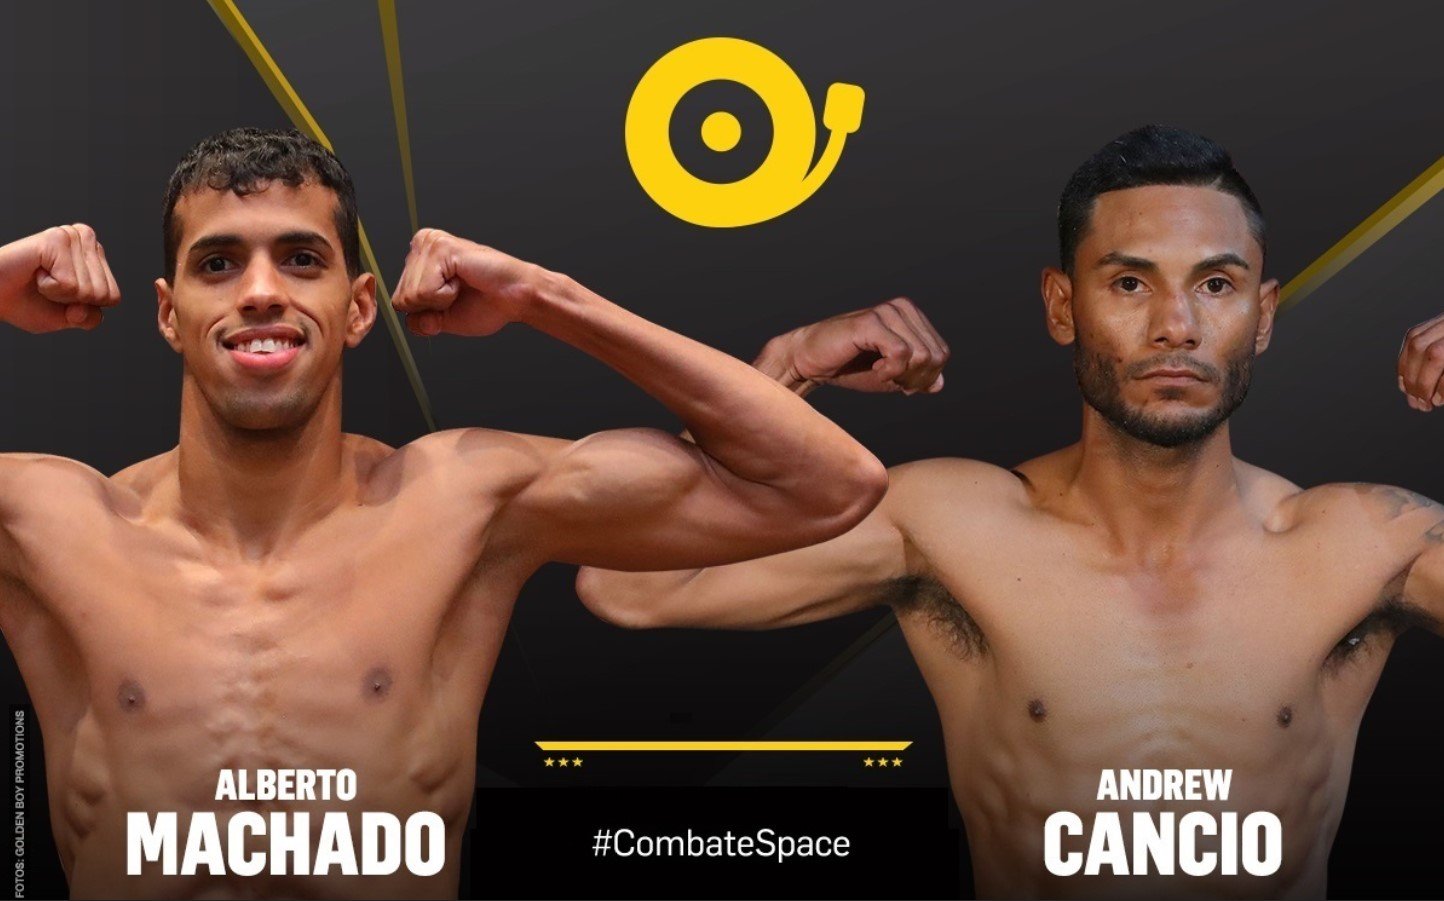 Este viernes Combate Space presenta Cancio vs. Machado en vivo ¡No te